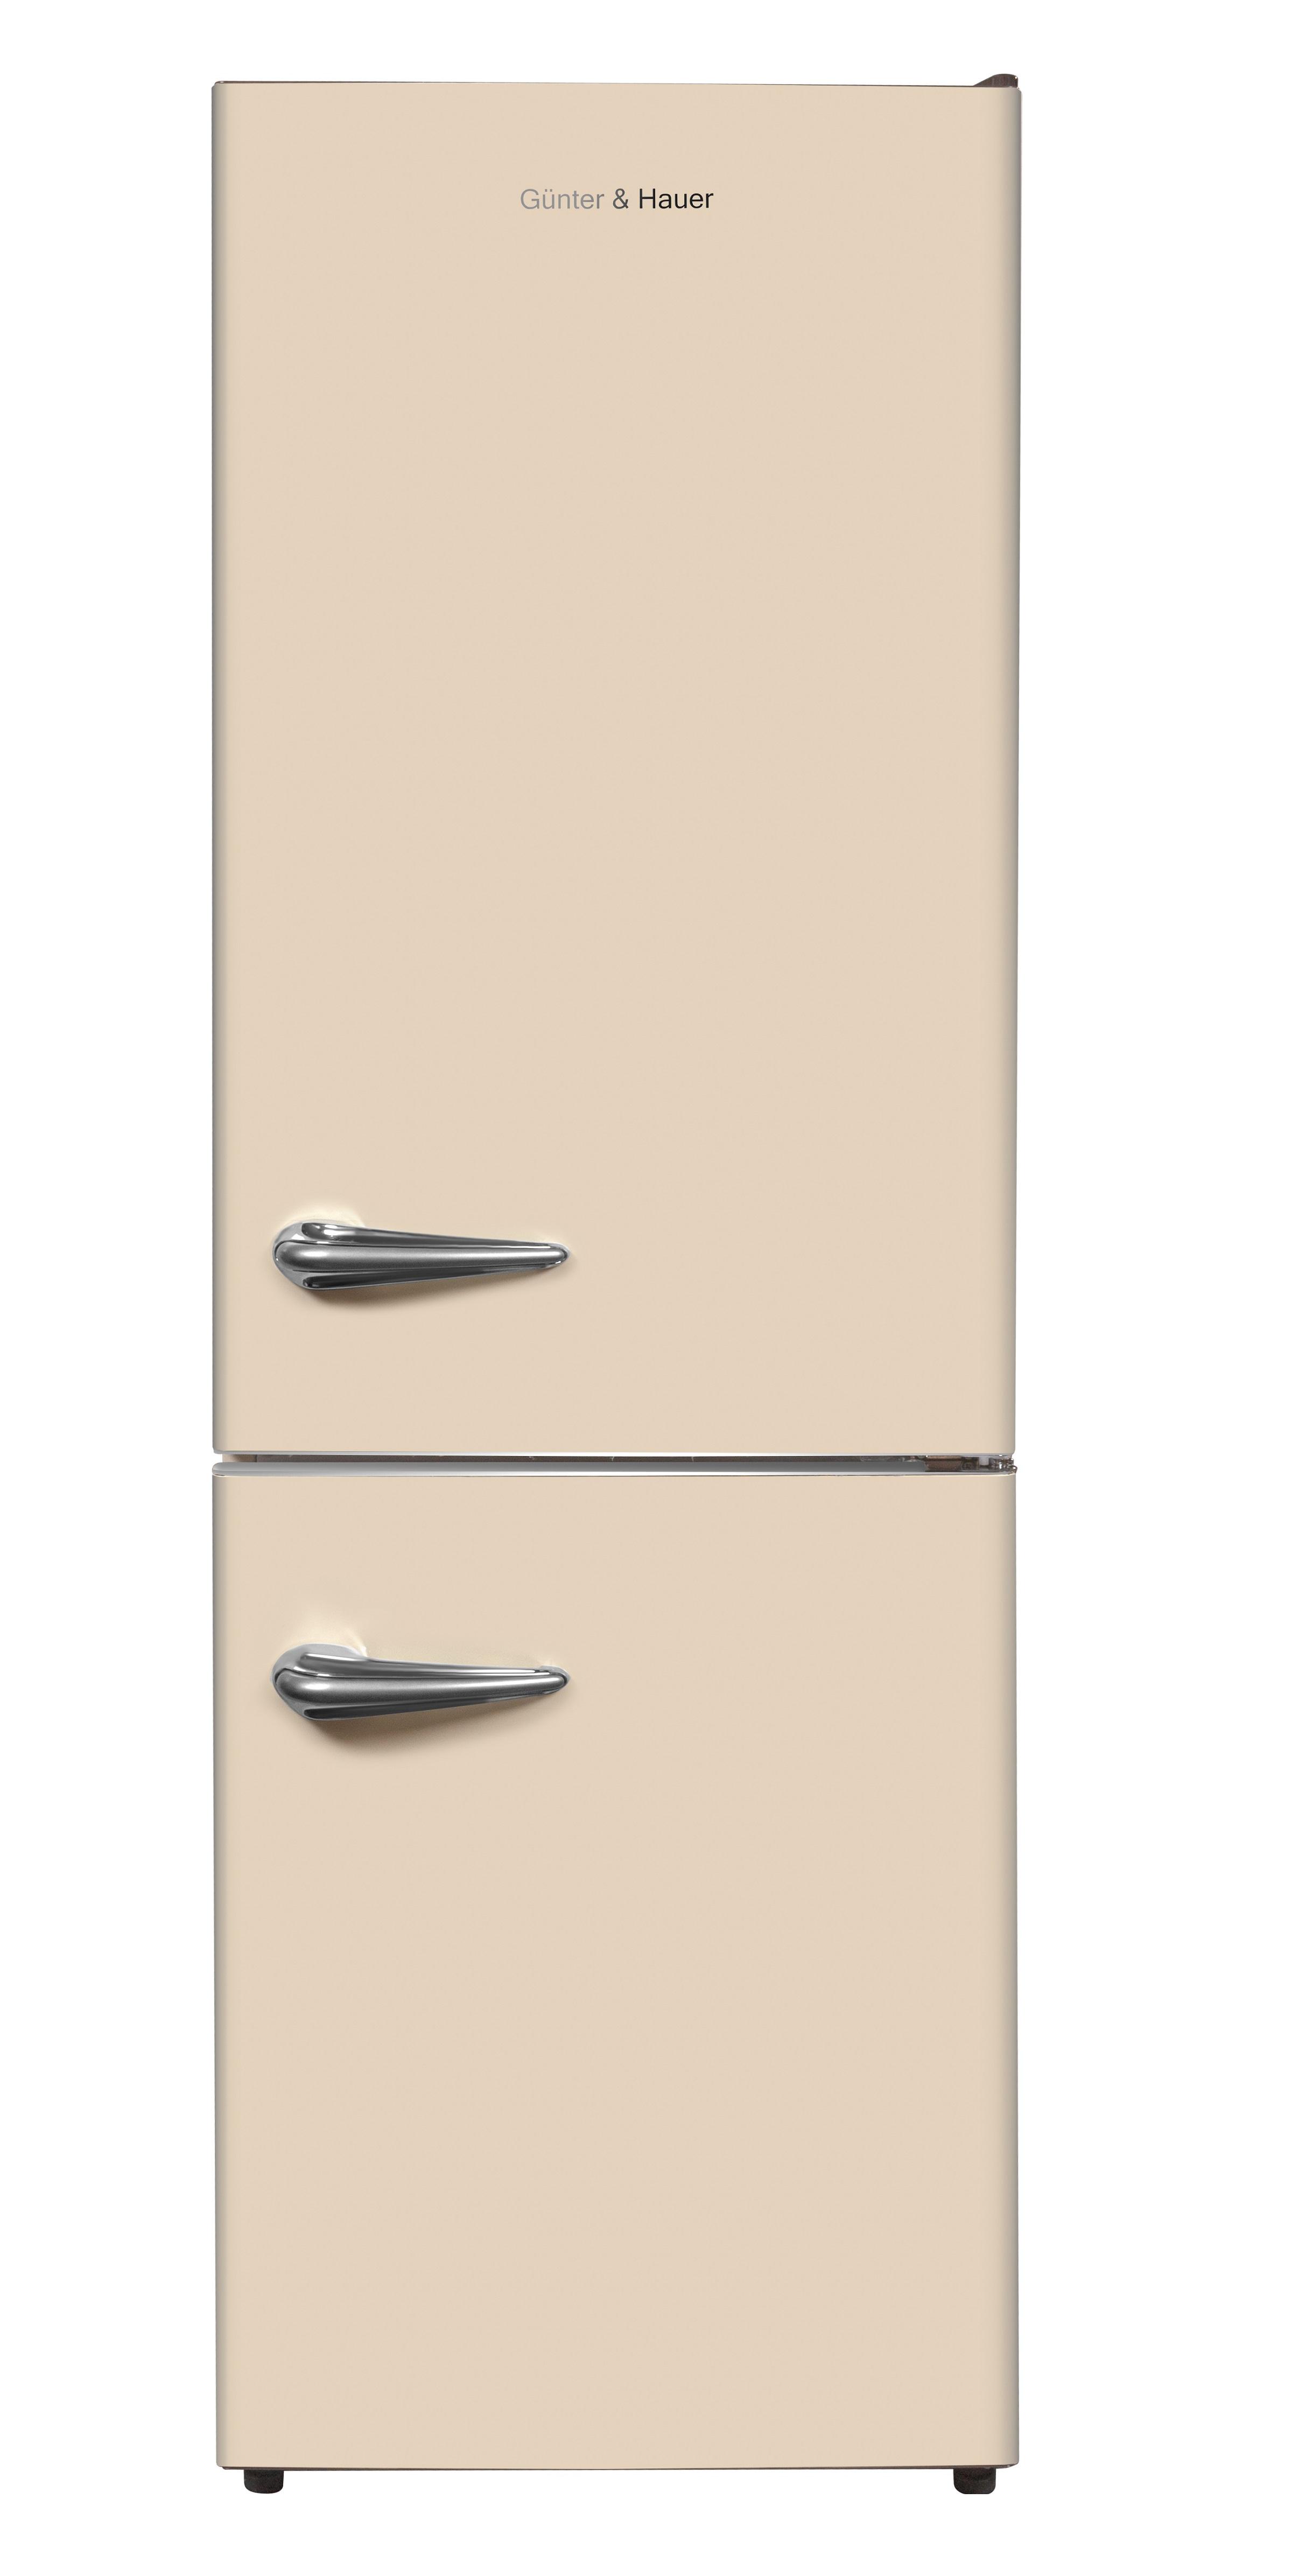 Холодильник Gunter&Hauer FN 369 B